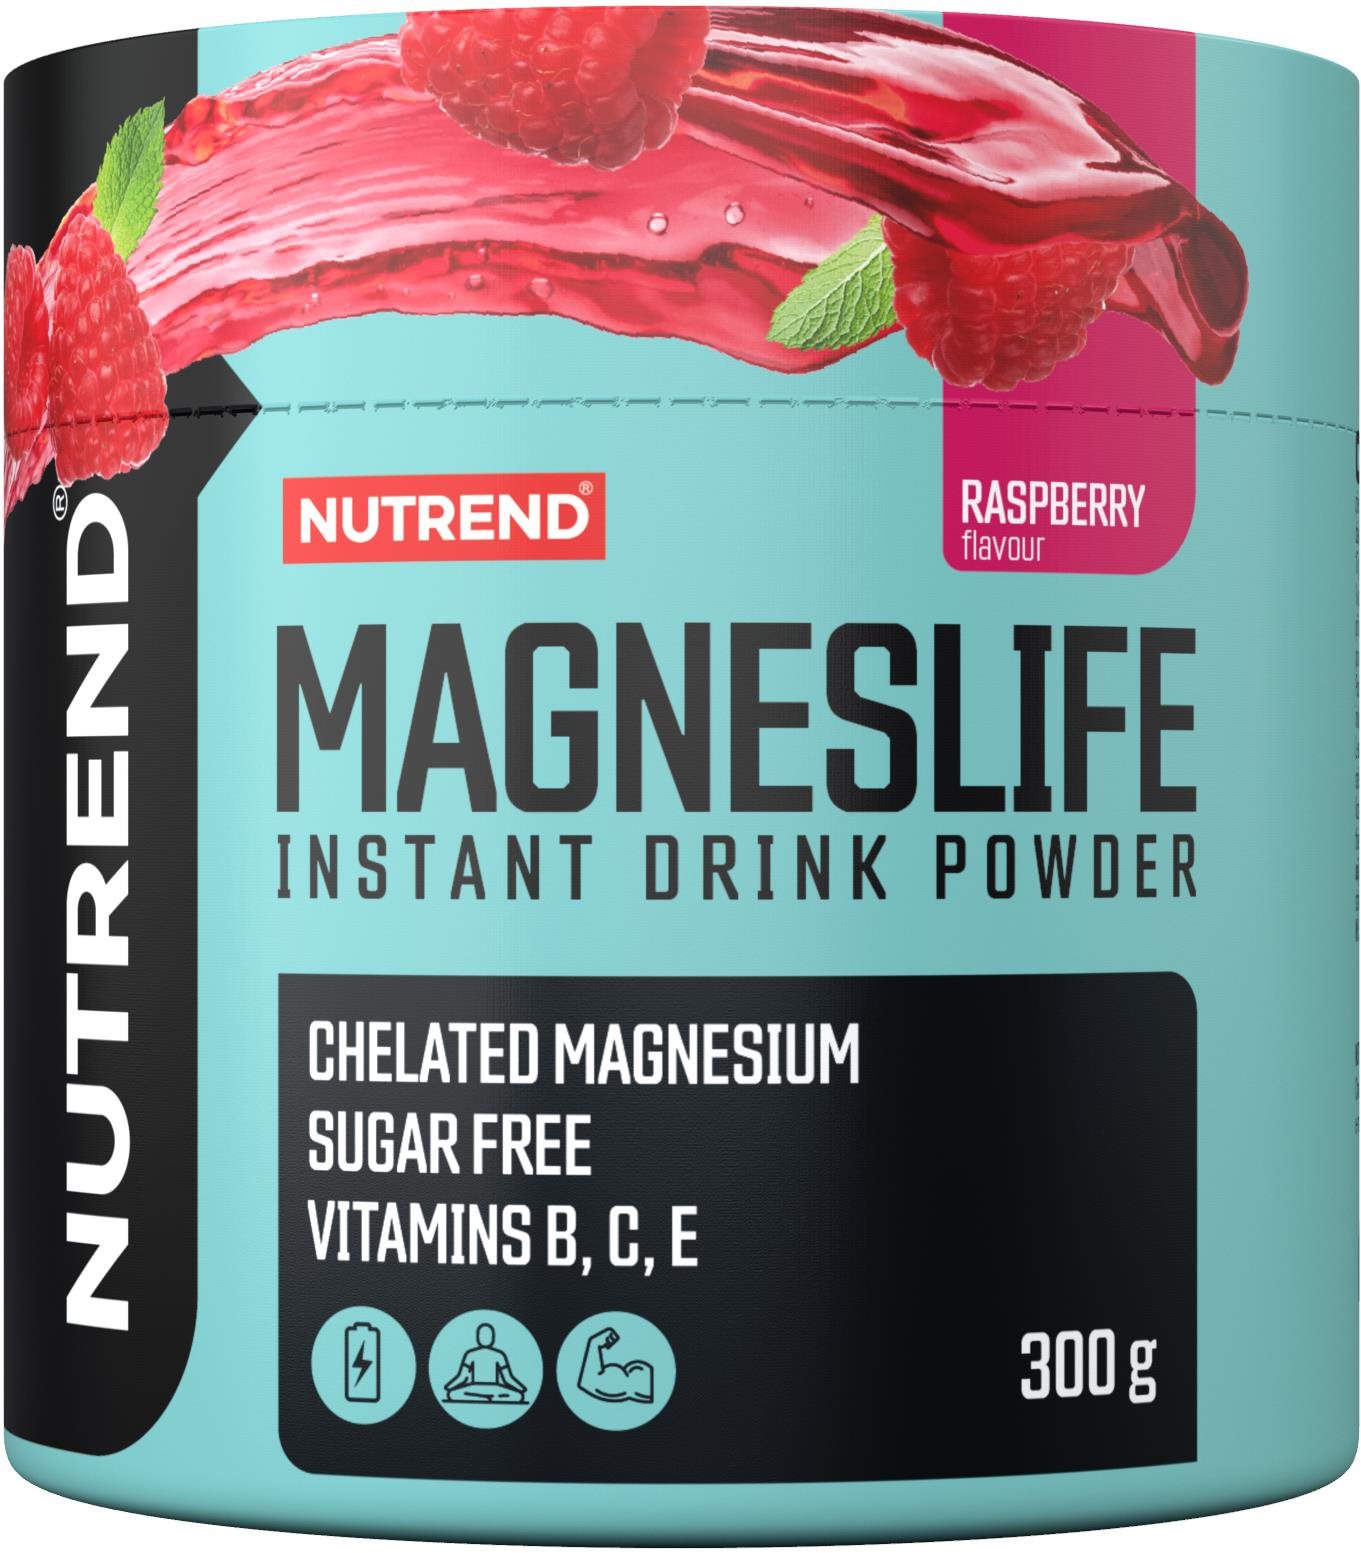 Nutrend Magneslife instant drink powder 300 g, málna